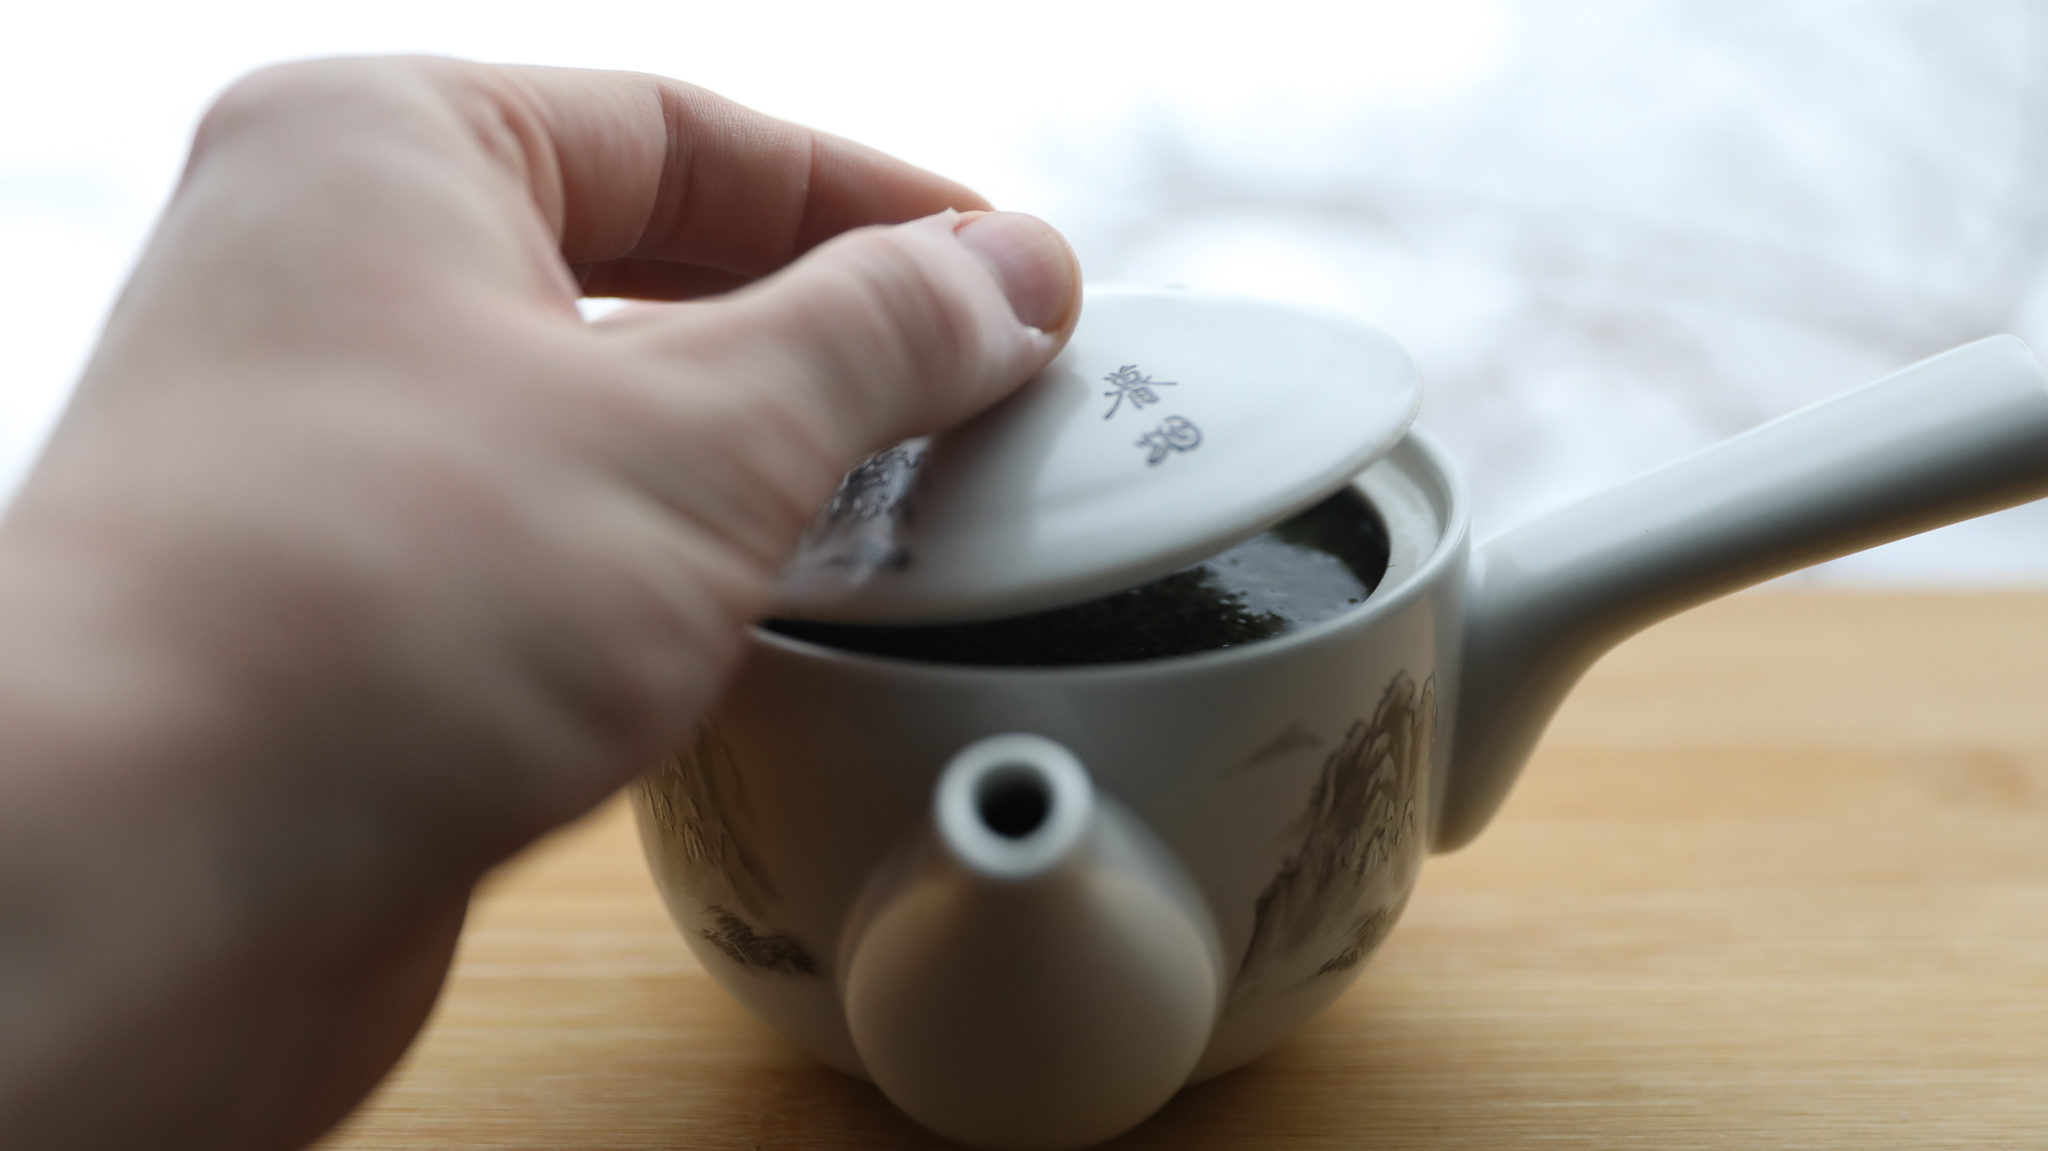 Gyokuro green tea from Brooklyn Tea